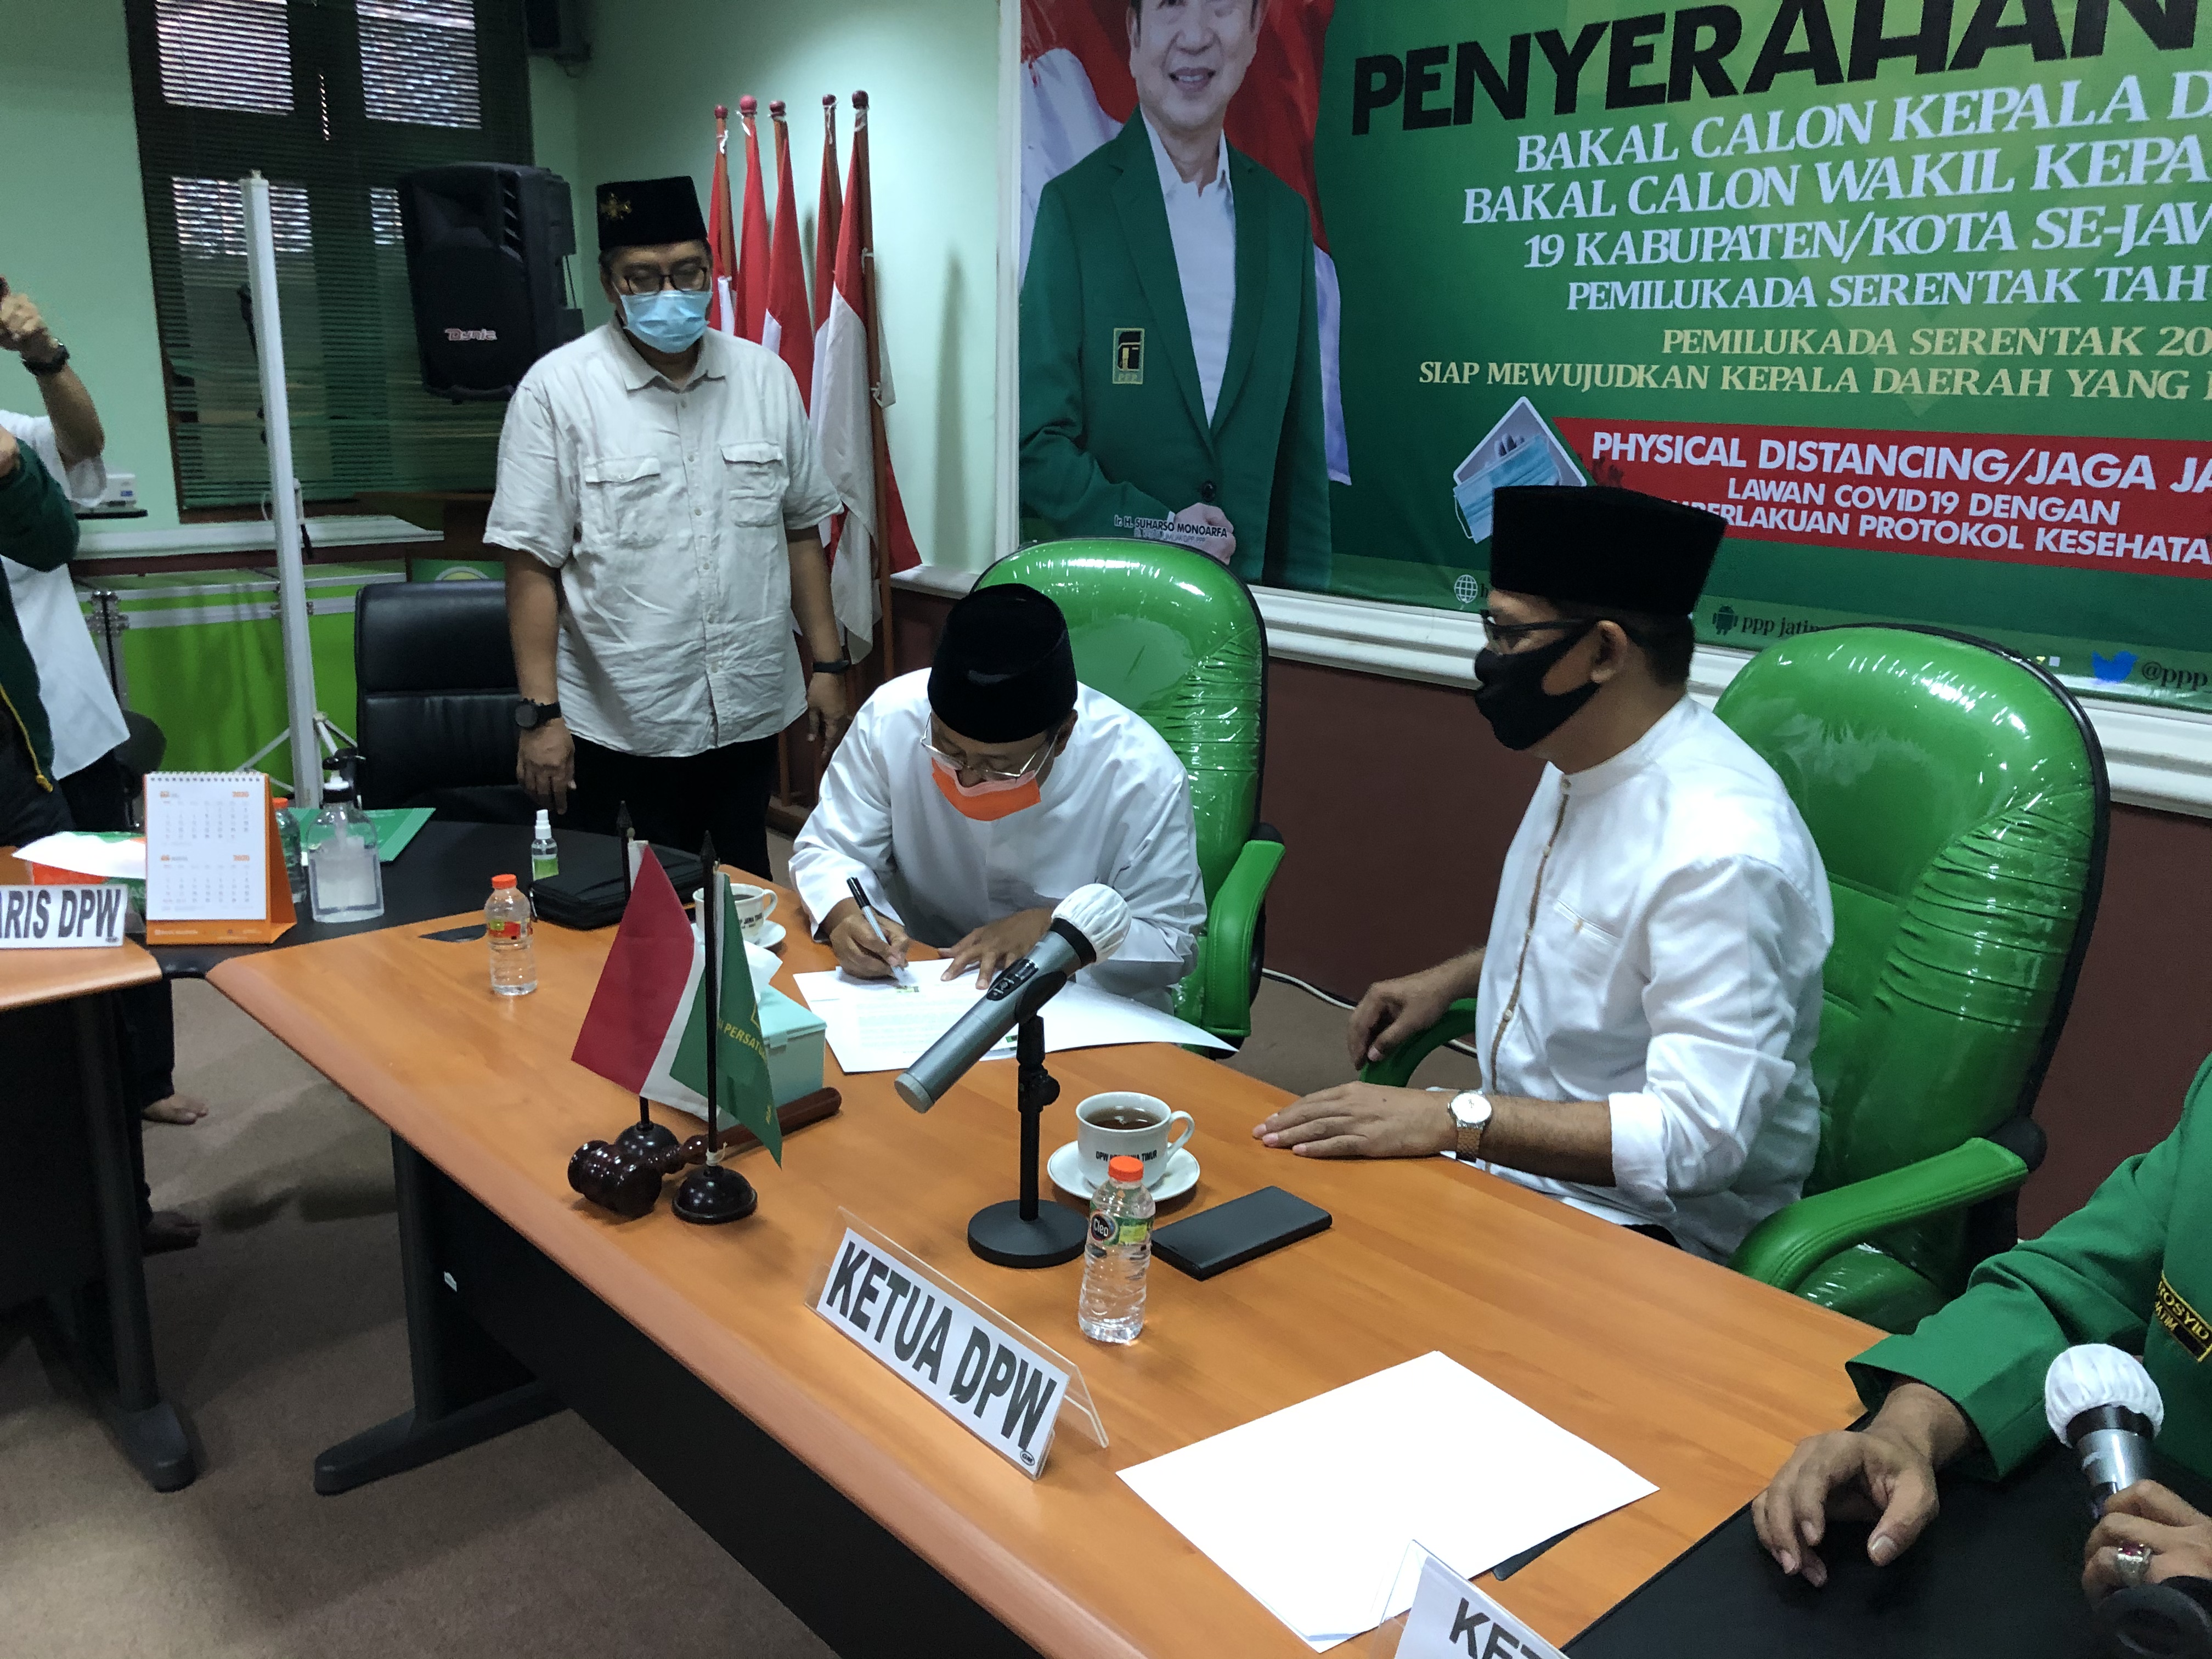 Bakal Calon Walikota Pasuruan Saifullah Yusuf (Gus Ipul) saat menandatangani berkas penerimaan rekomendasi dari PPP. (Foto: Ngopibareng.id)